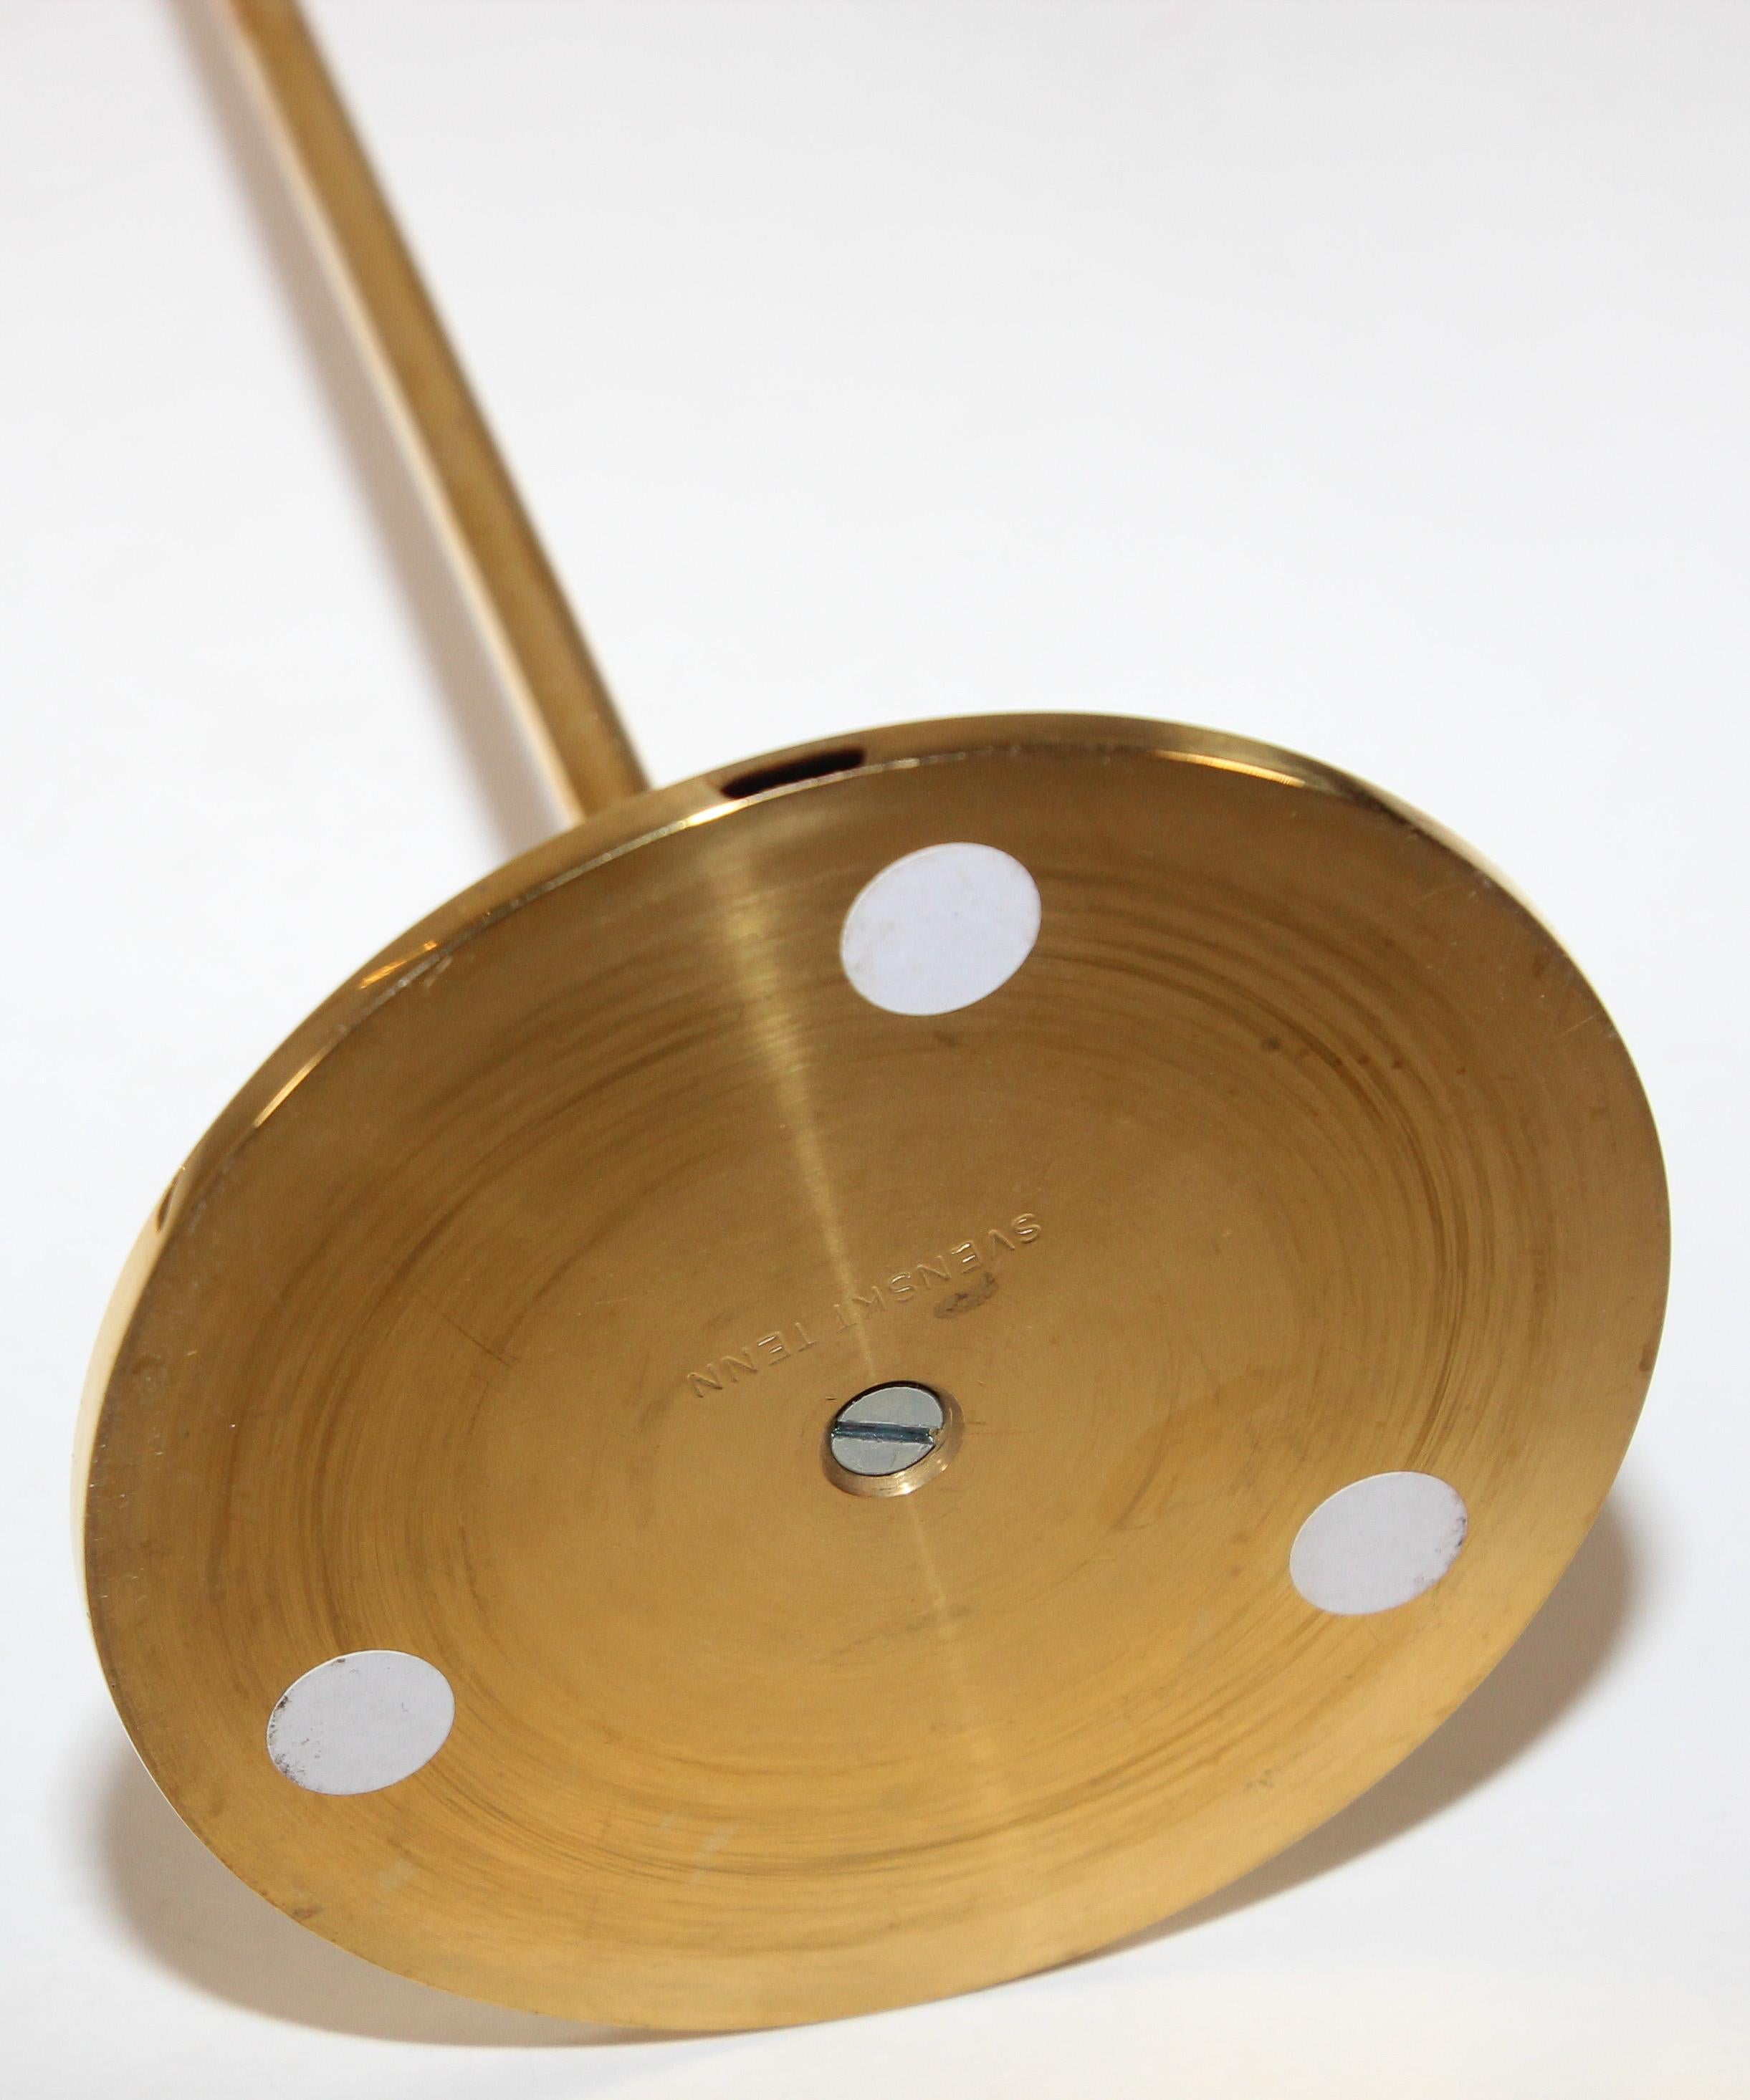 Hand-Crafted Polished Brass Candle Holder by Estrid Ericson for Svenskt Tenn Sweden